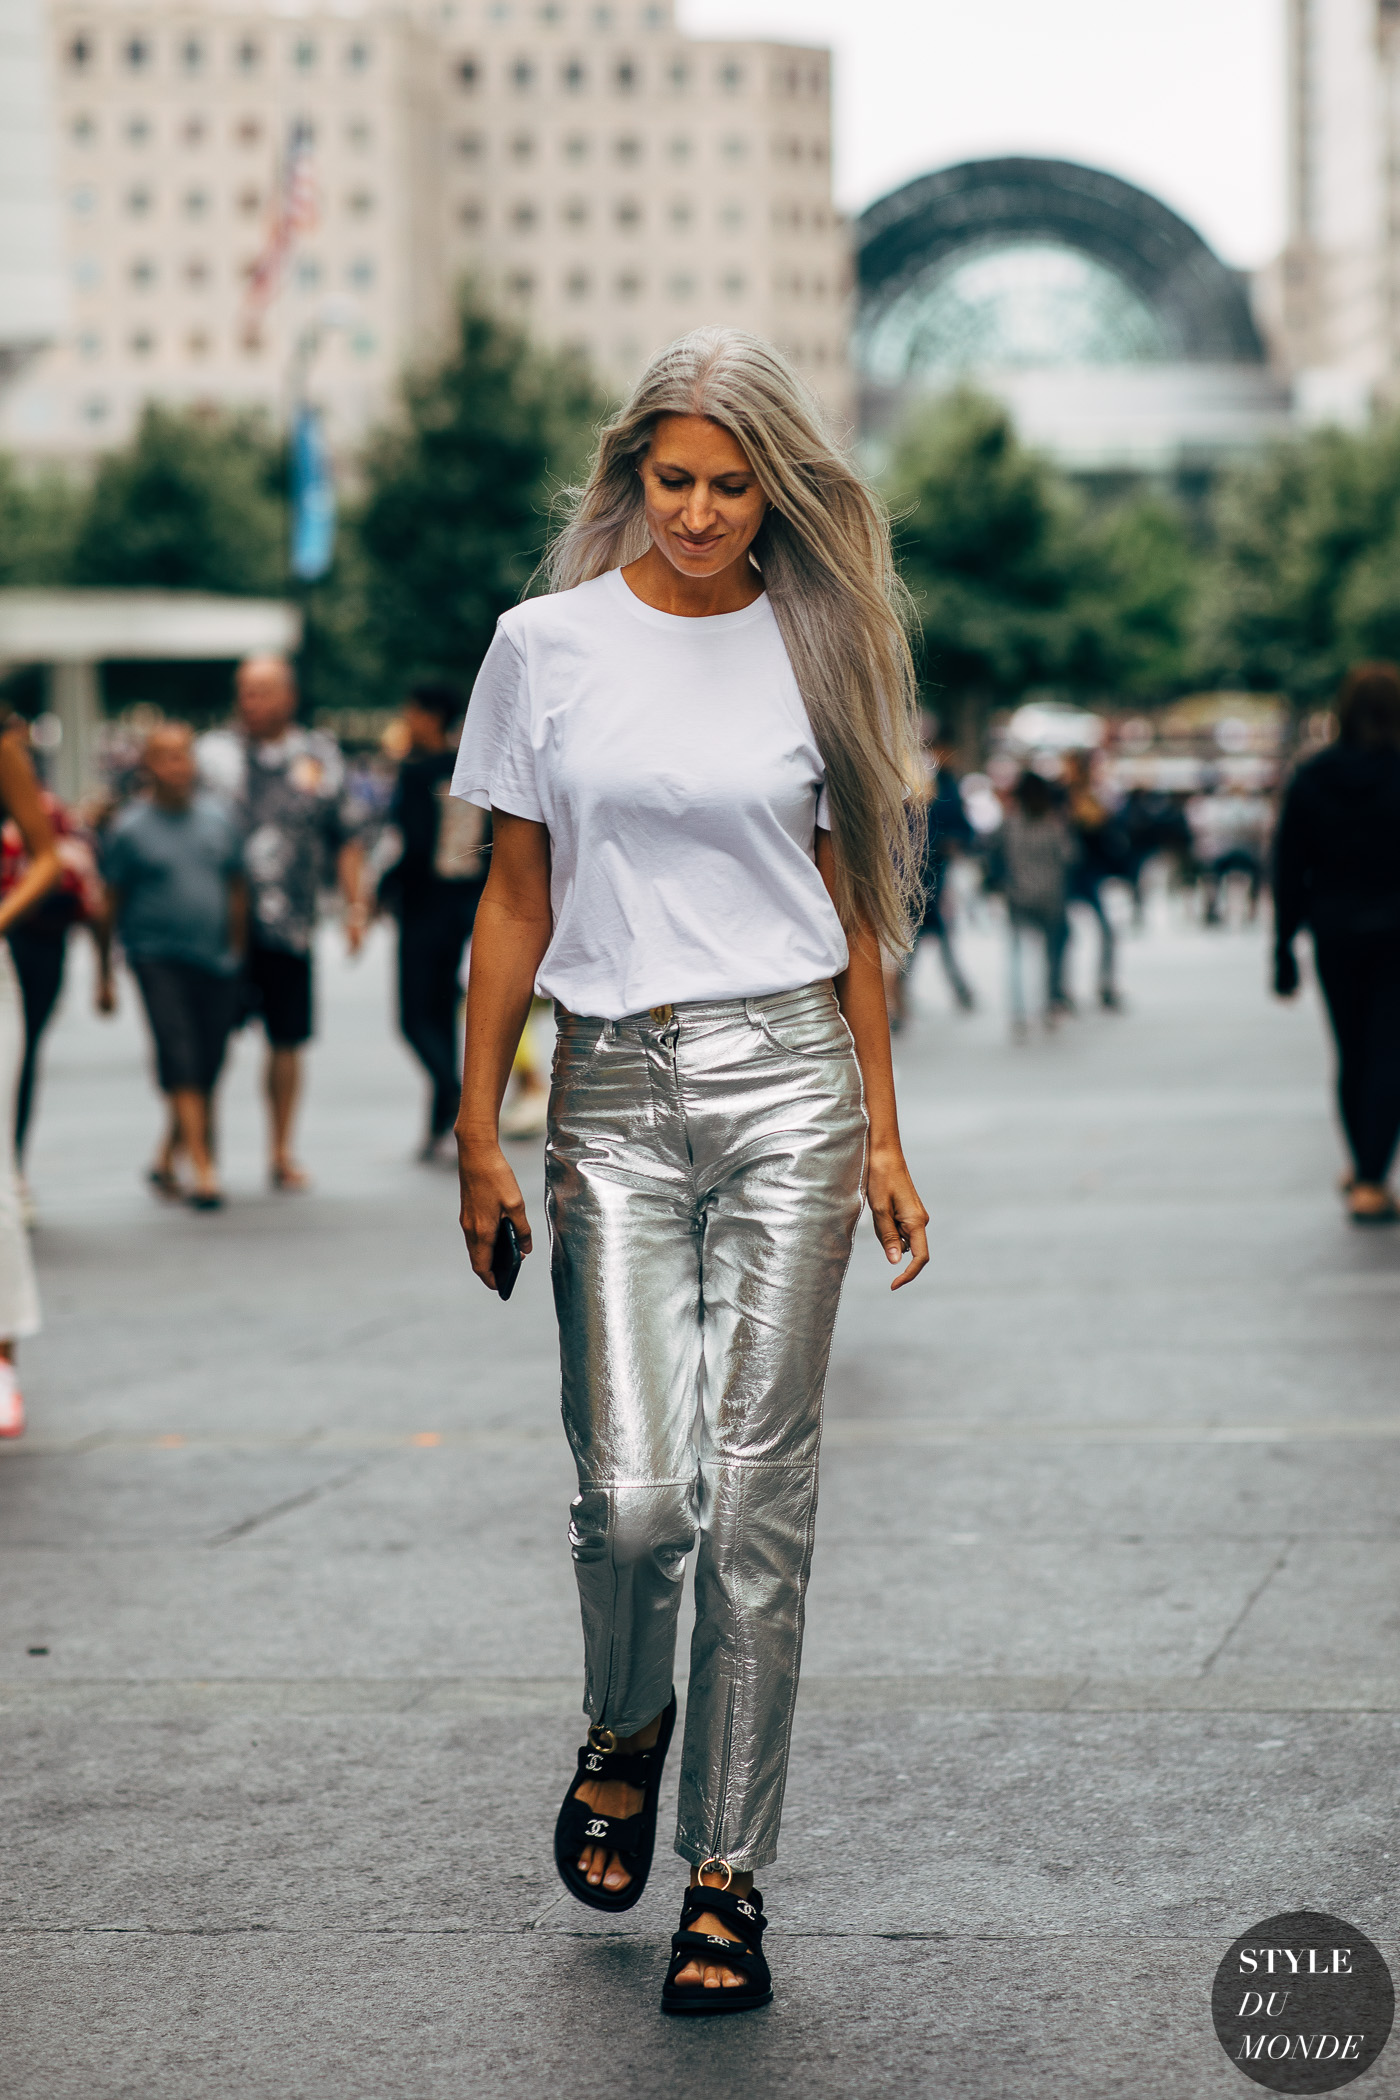 Sarah Harris - STYLE DU MONDE | Street Style Street Fashion Photos